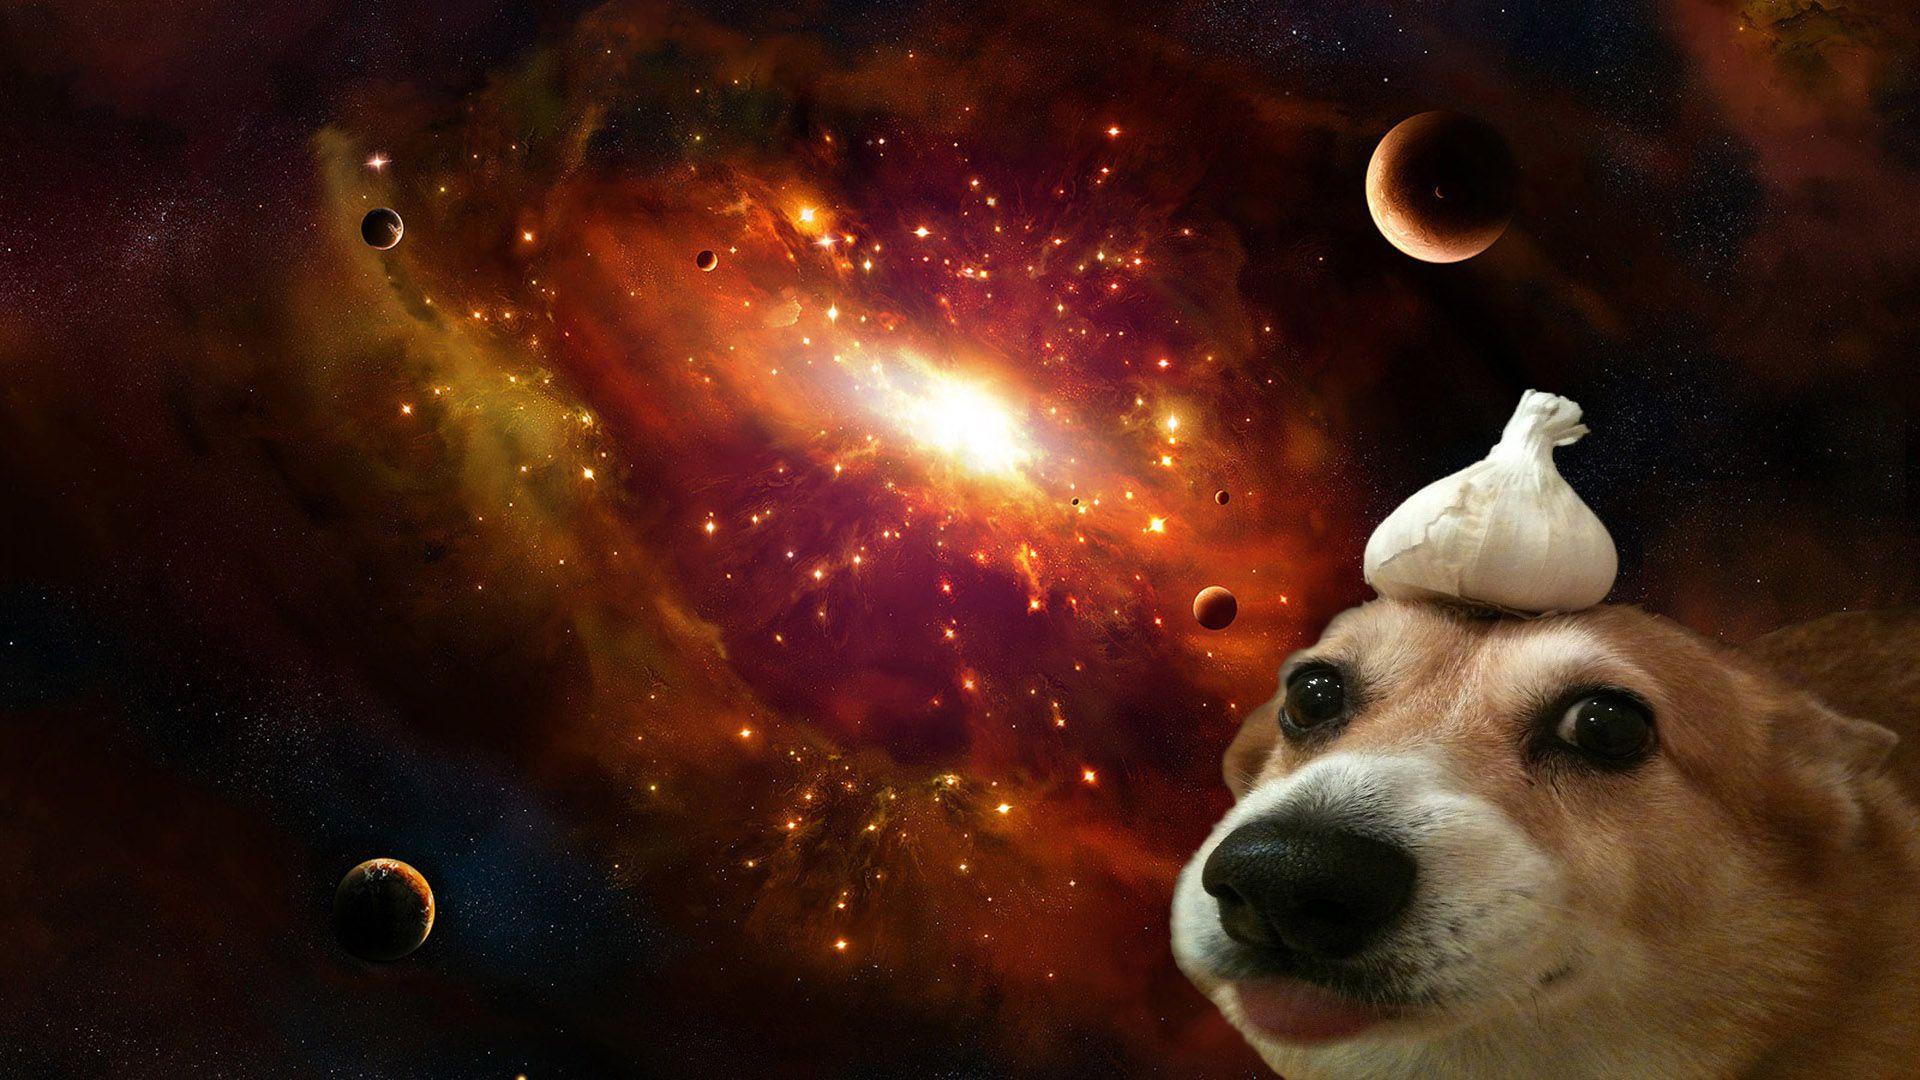 Cùng đến với chiếc ảnh hình nền vô cùng dễ thương, với chú chó xinh xắn đang ngồi ngoài kia nhìn xuống thiên hà phía trên. Điểm xuyến của thiên hà rực rỡ tỏa sáng cùng sự dễ thương đáng yêu của chú cún nhất định sẽ làm bạn cảm thấy vô cùng tươi vui và hạnh phúc!